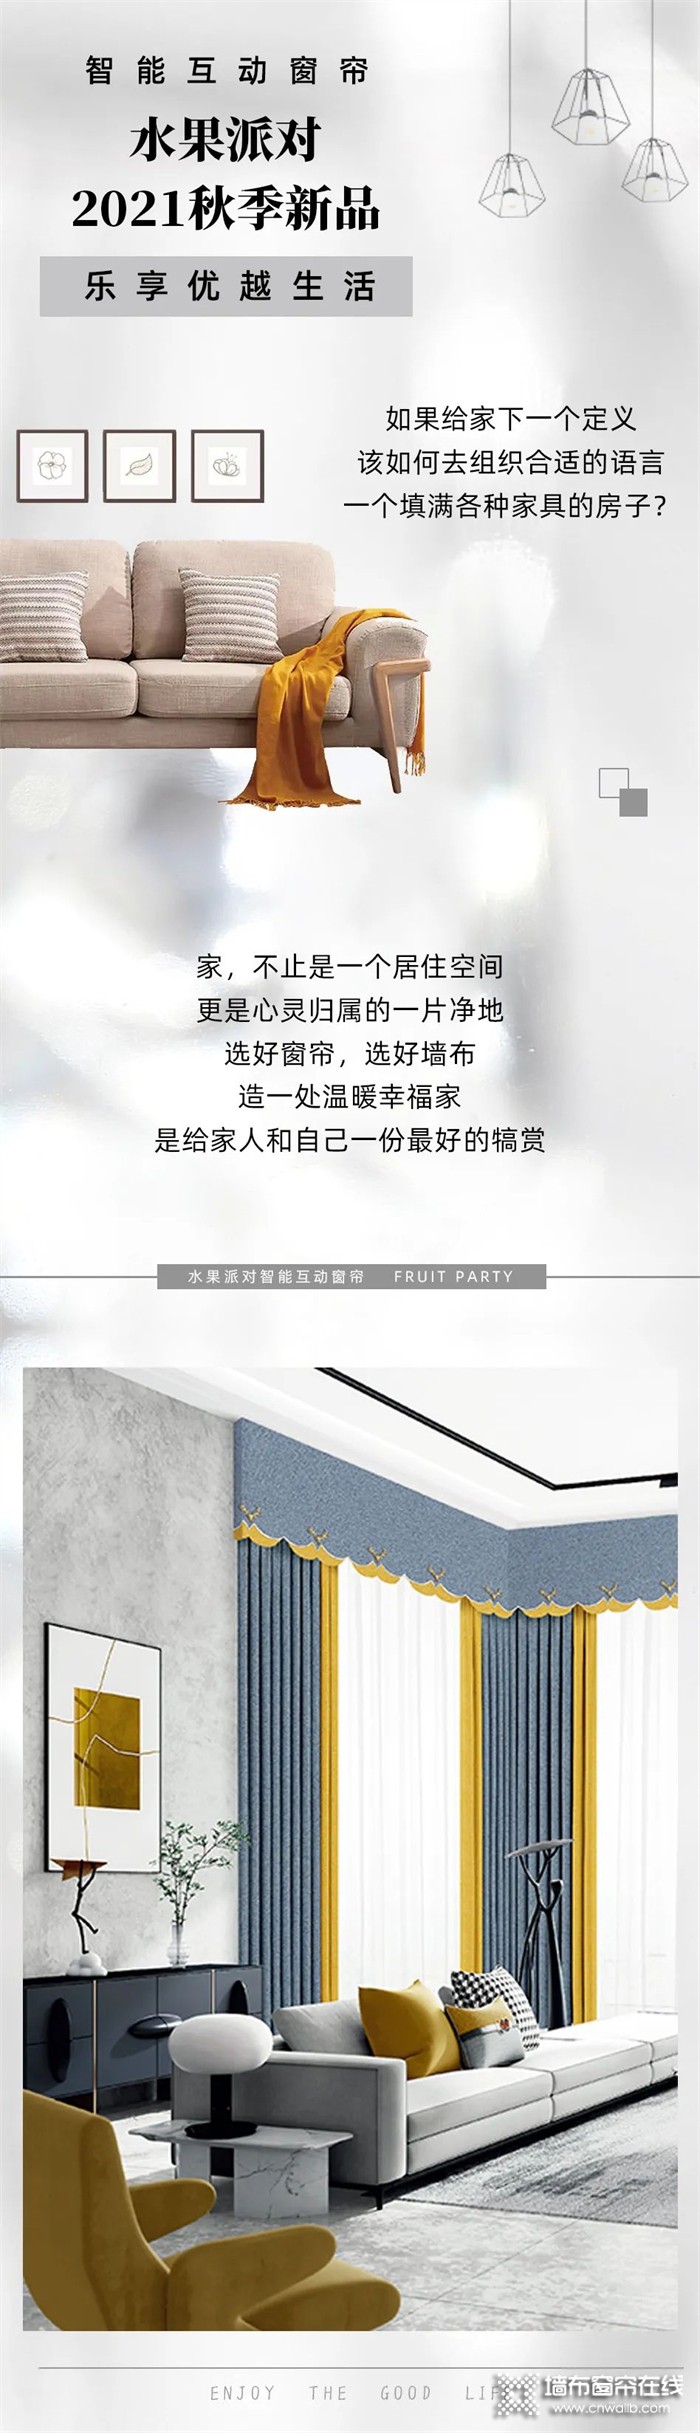 绣江南艺术墙布旗下水果派对2021秋季新品-乐享优越生活